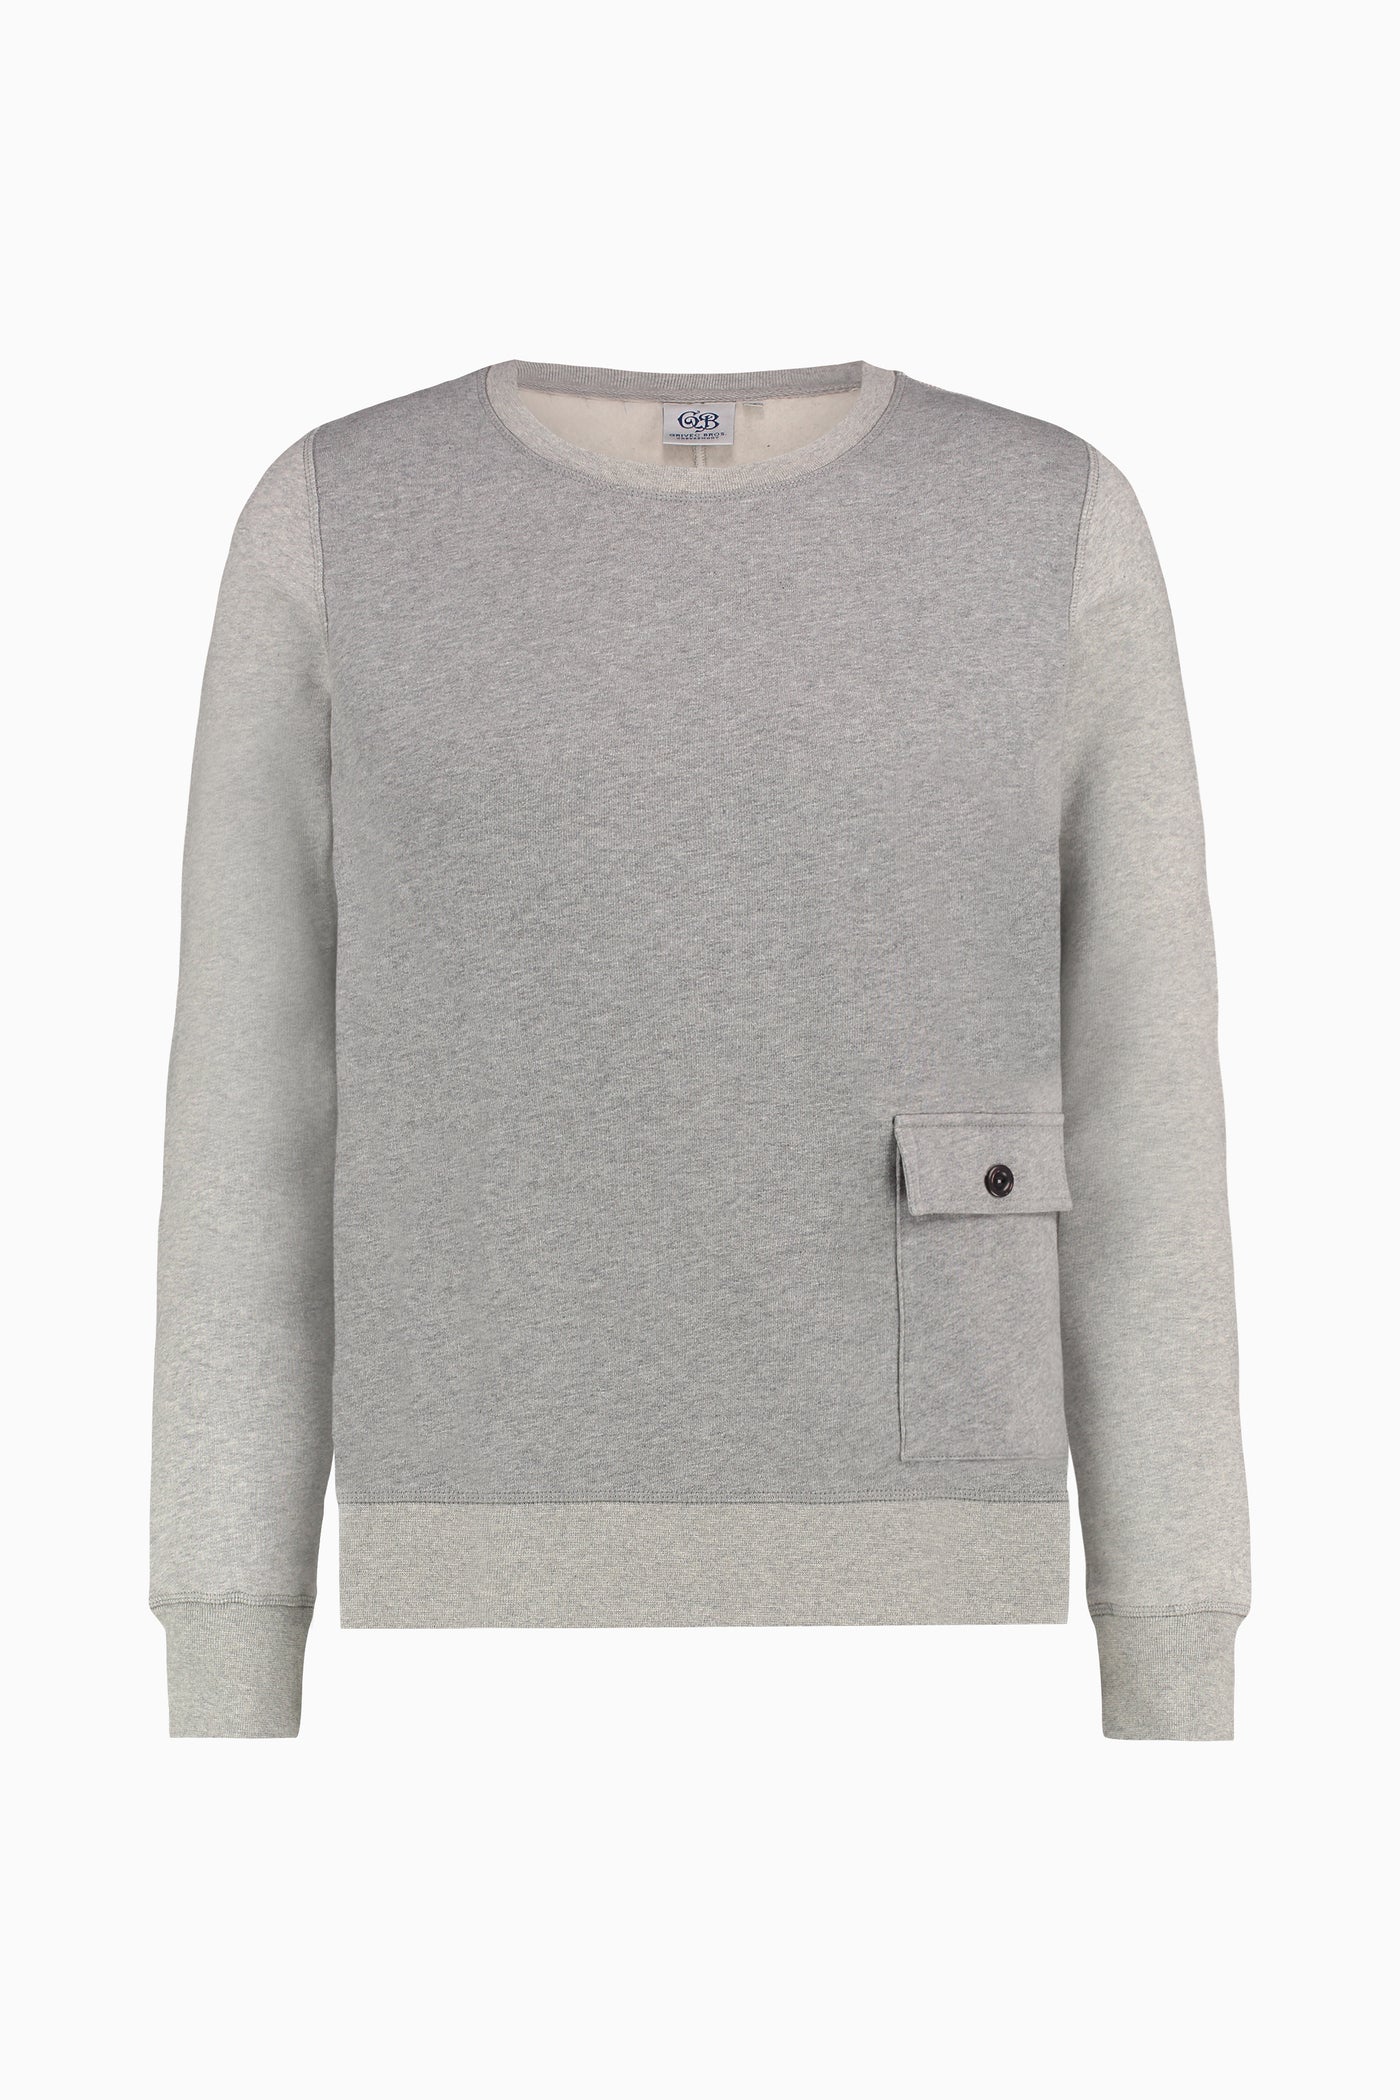 Sweater Two Tone Grey